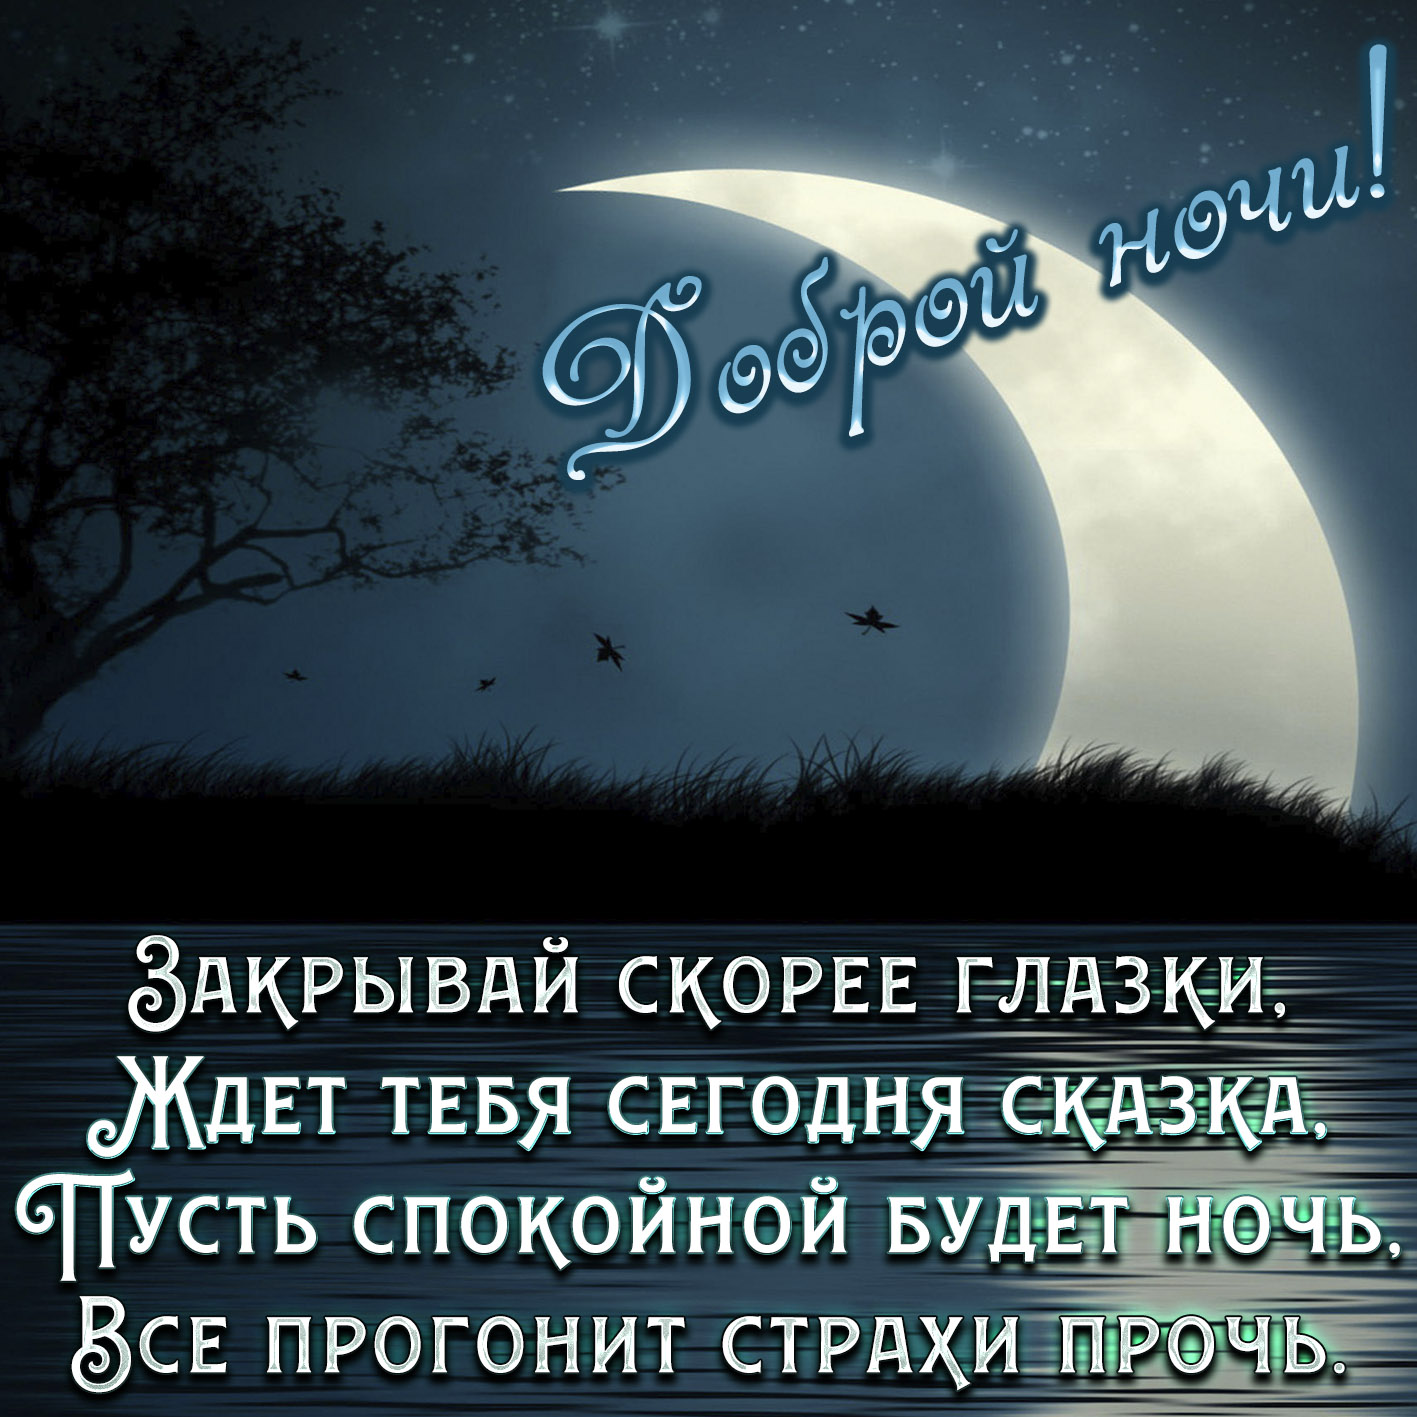 Желаем спокойной ночи любимым. Пожелания спокойной ночи. Пожелания доброй ночи. Стихи спокойной ночи. Пожелания спокойной ночи любимому.